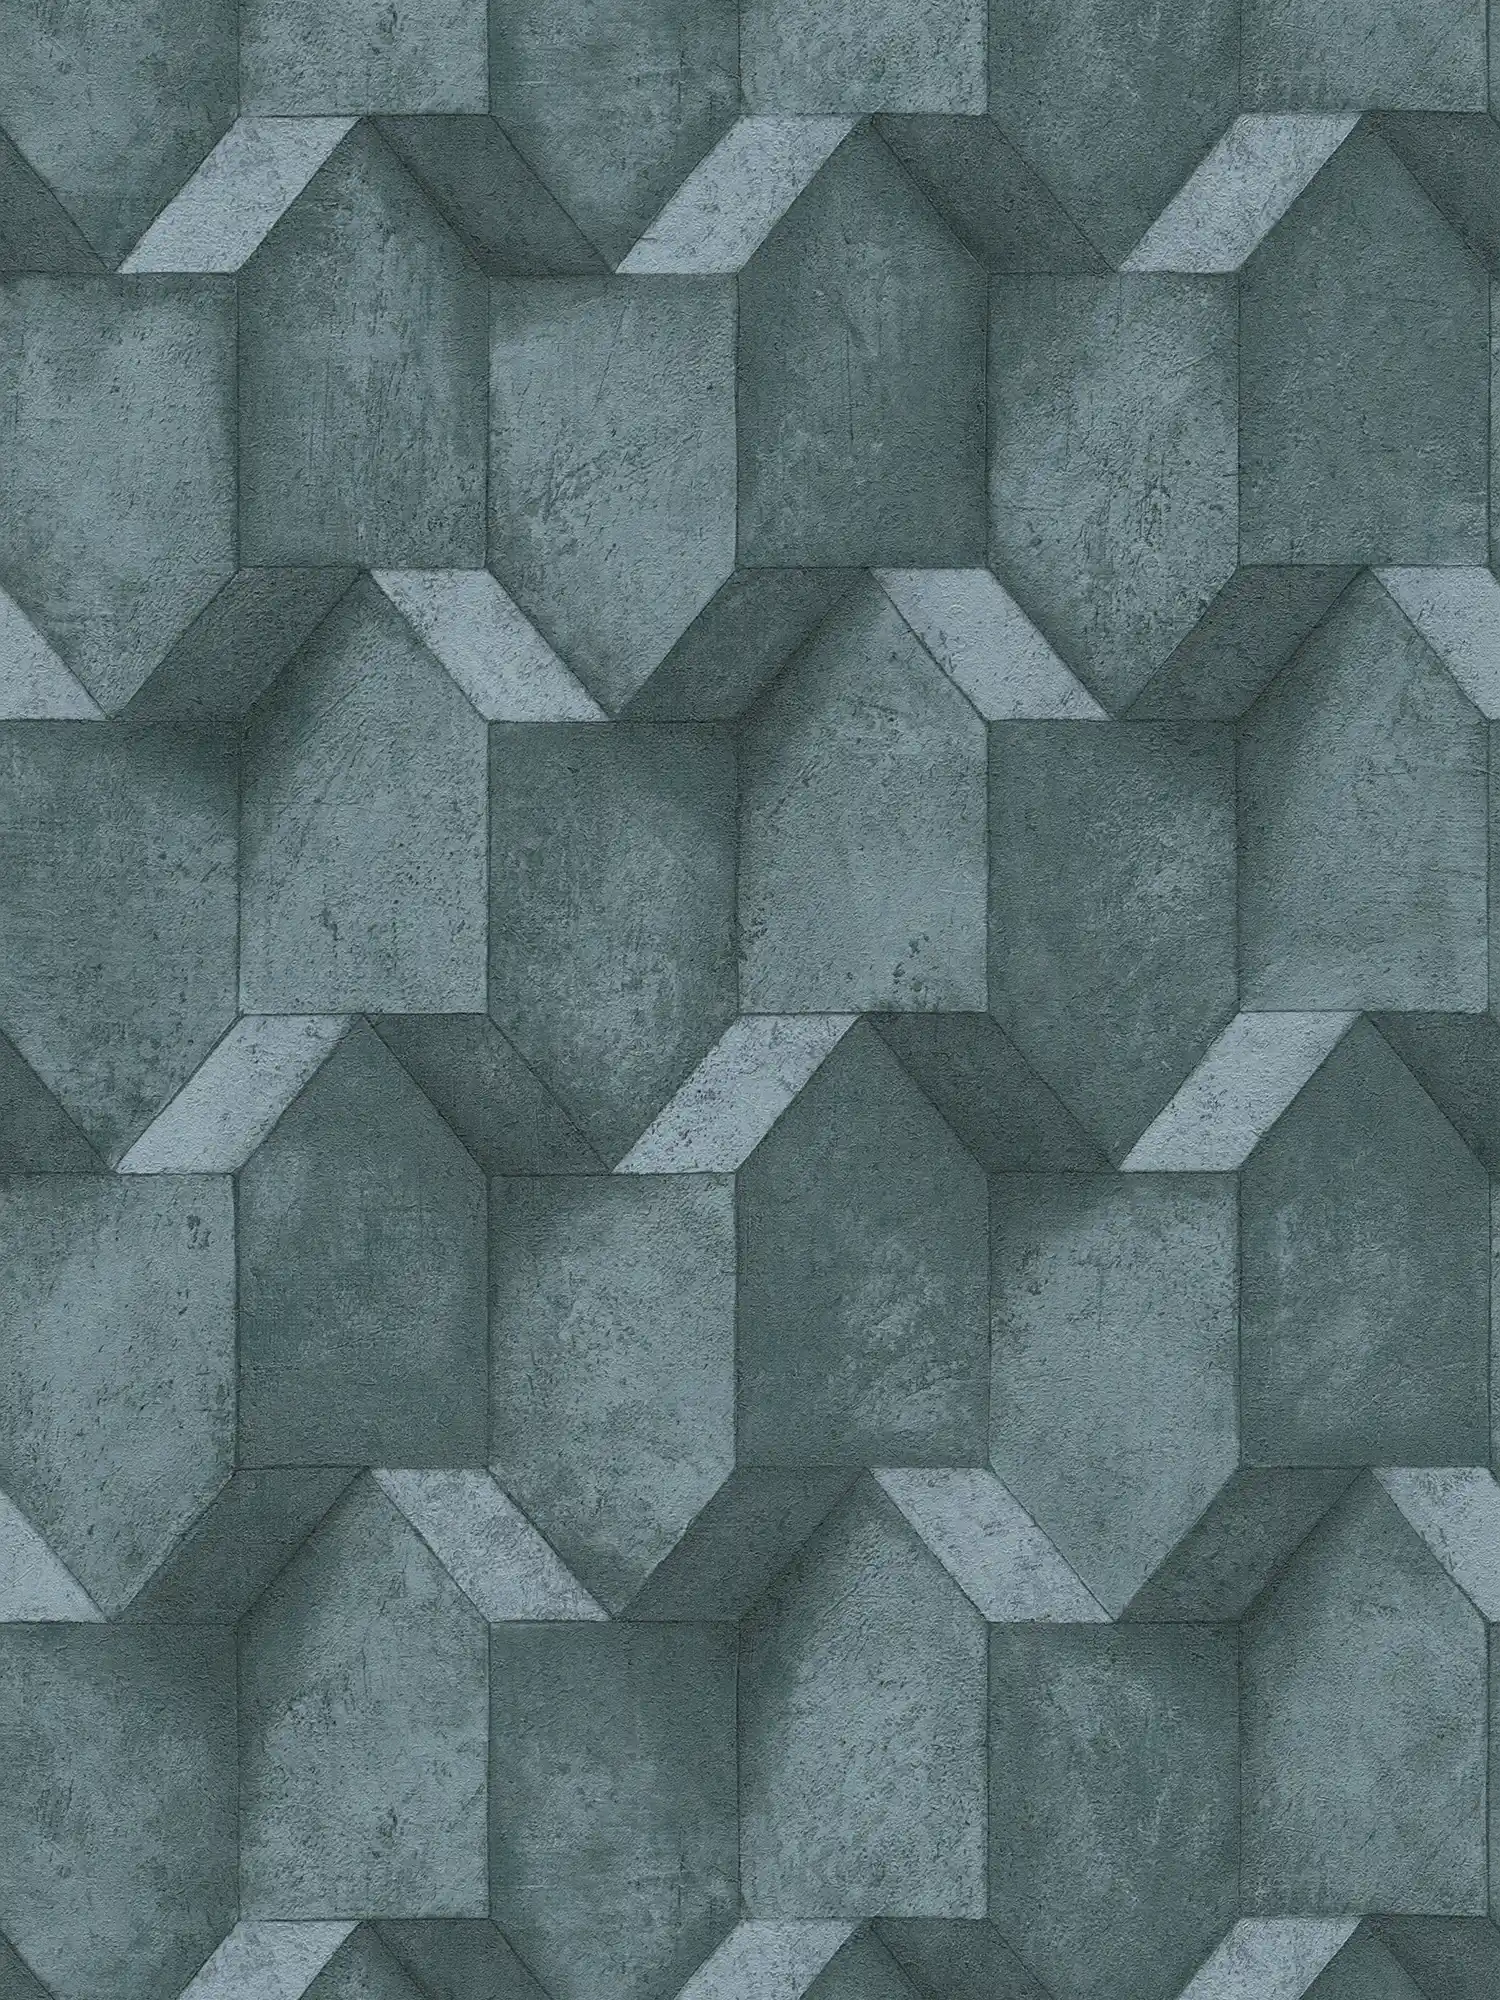 3D concrete look wallpaper with texture details - blue
